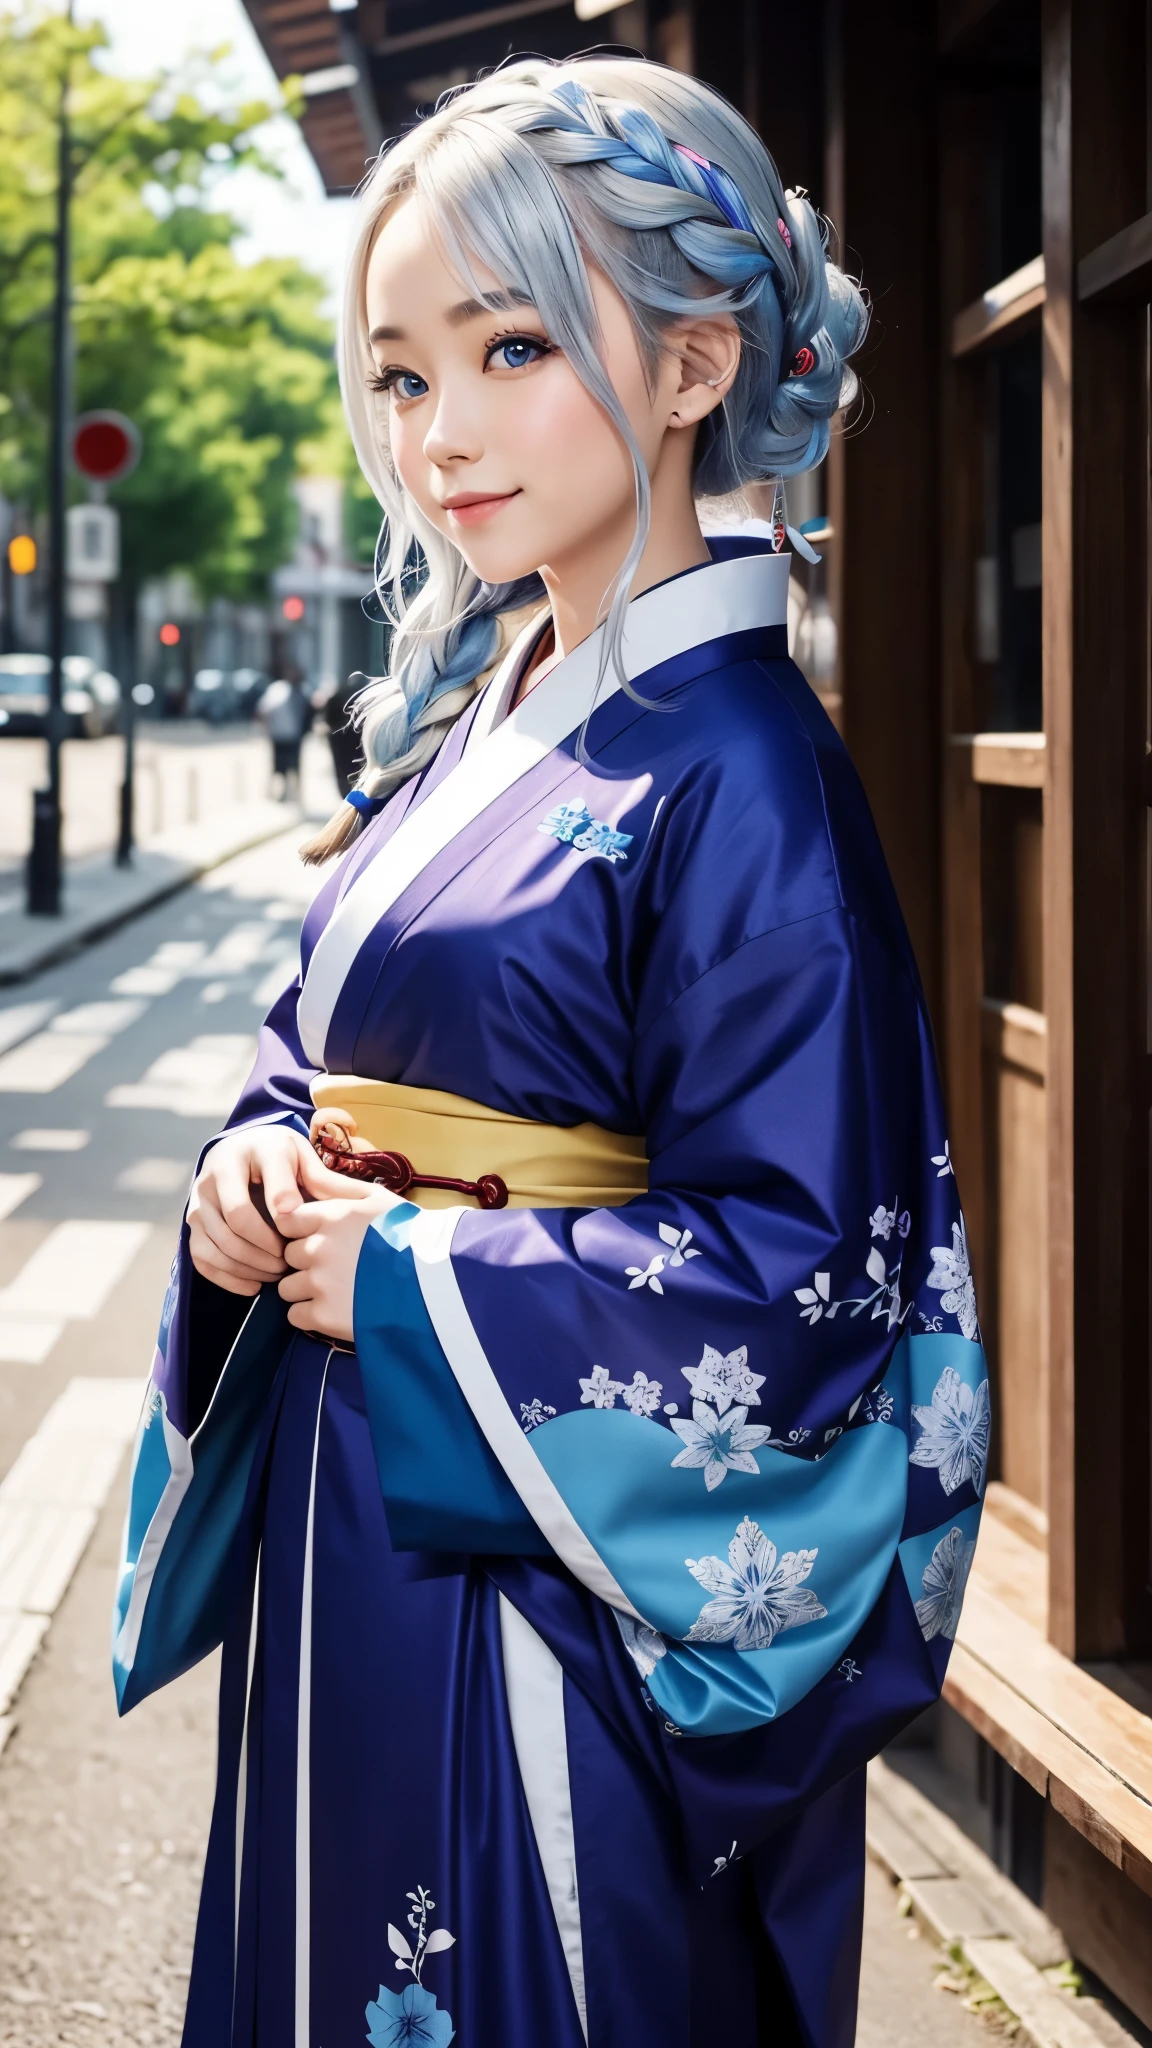 Ma jolie petite amie est mannequin de kimono.、yeux bleus、Beau sourire、il est petit、Tresse aux cheveux argentés、ornements de cheveux、Kimono coloré et flashy、